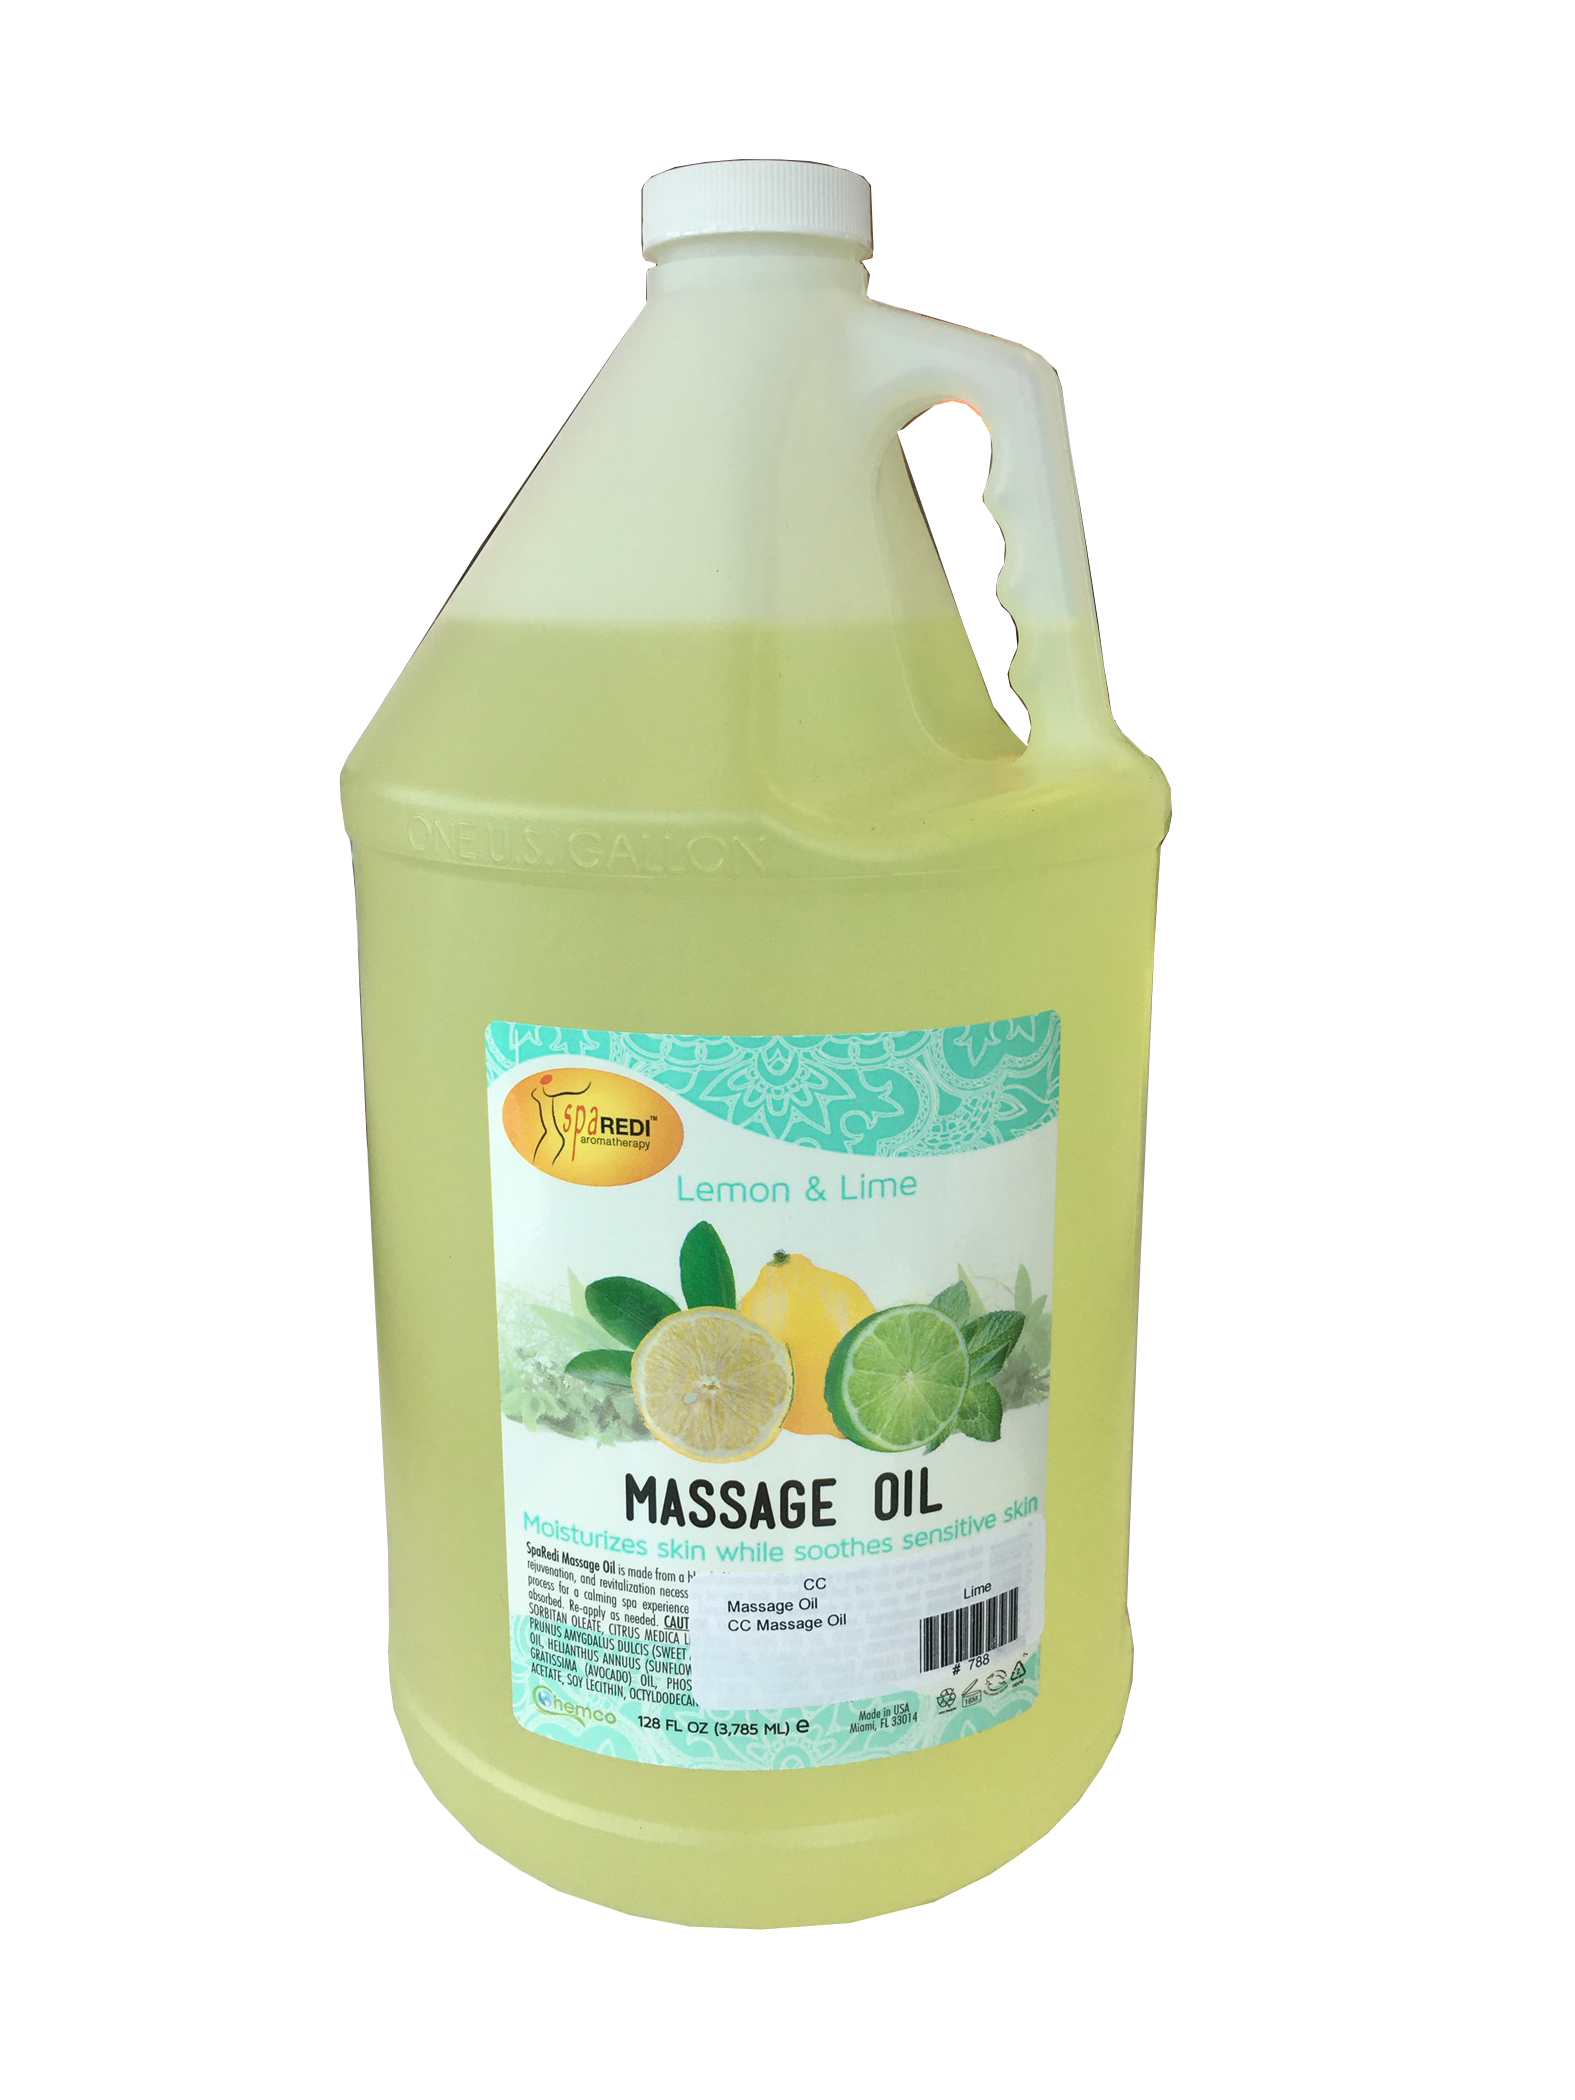 Chemco Pro Nail Massage Oil - Lemon & Lime